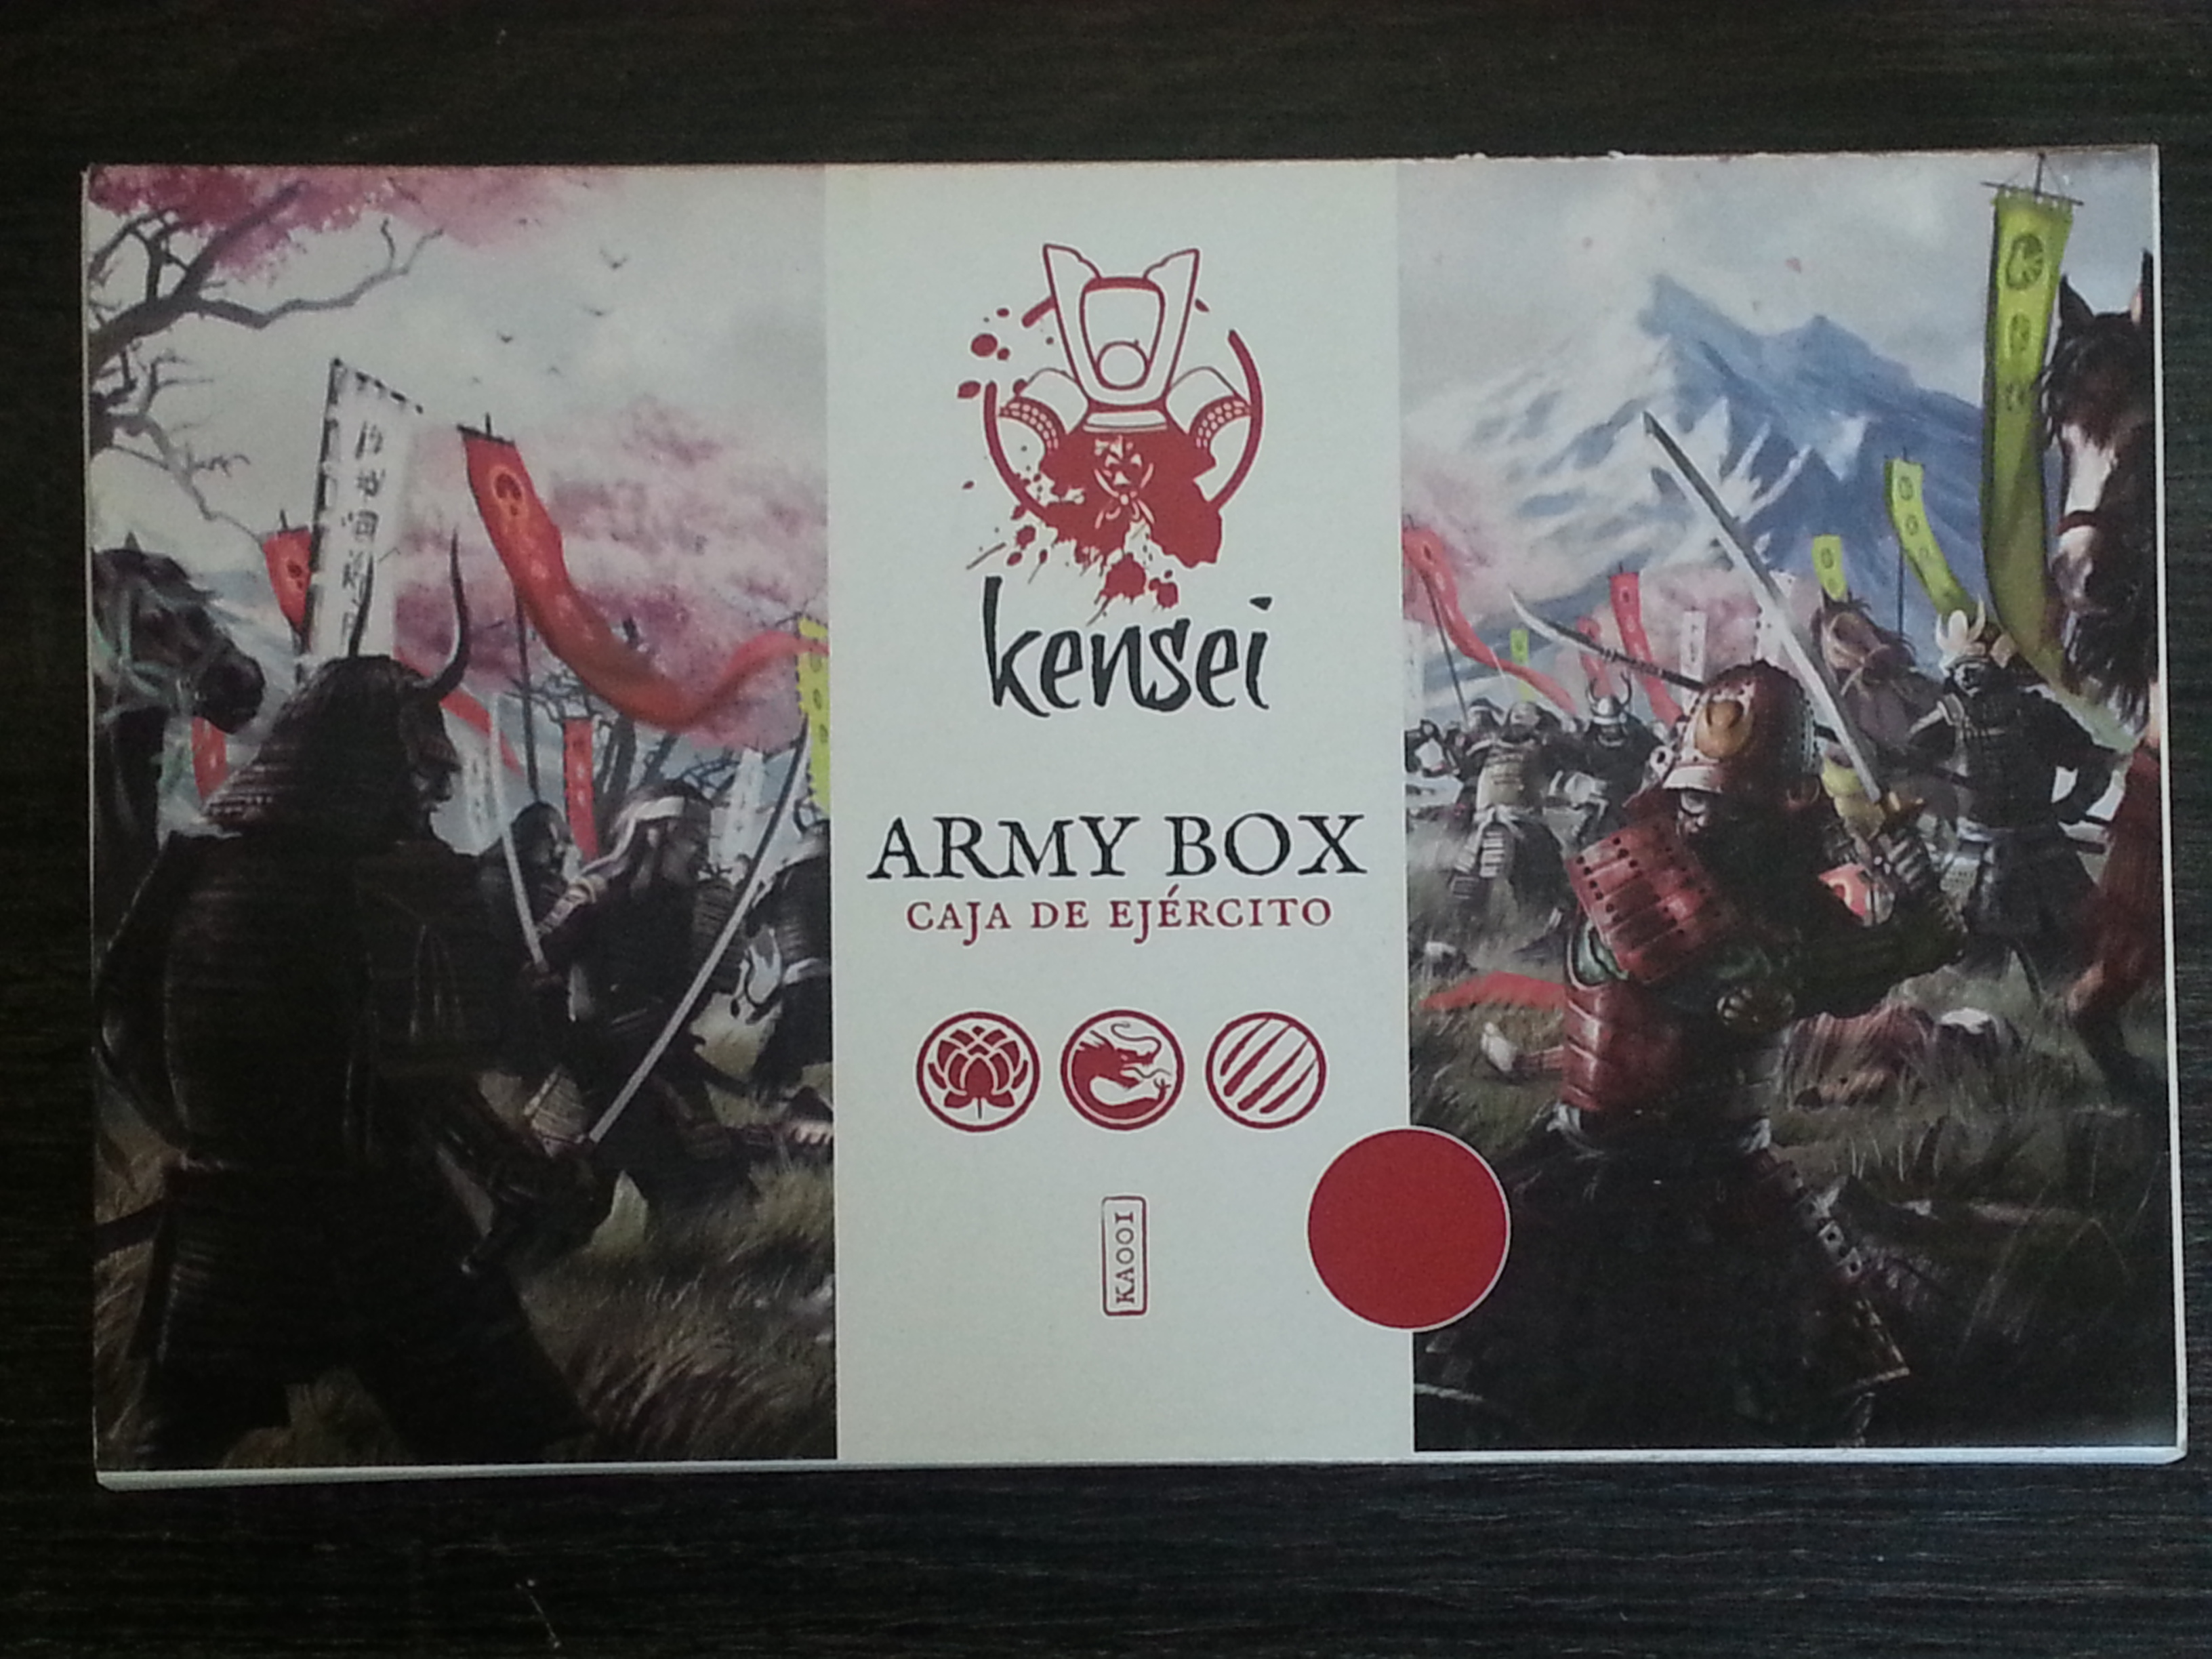 Kensei Army Box